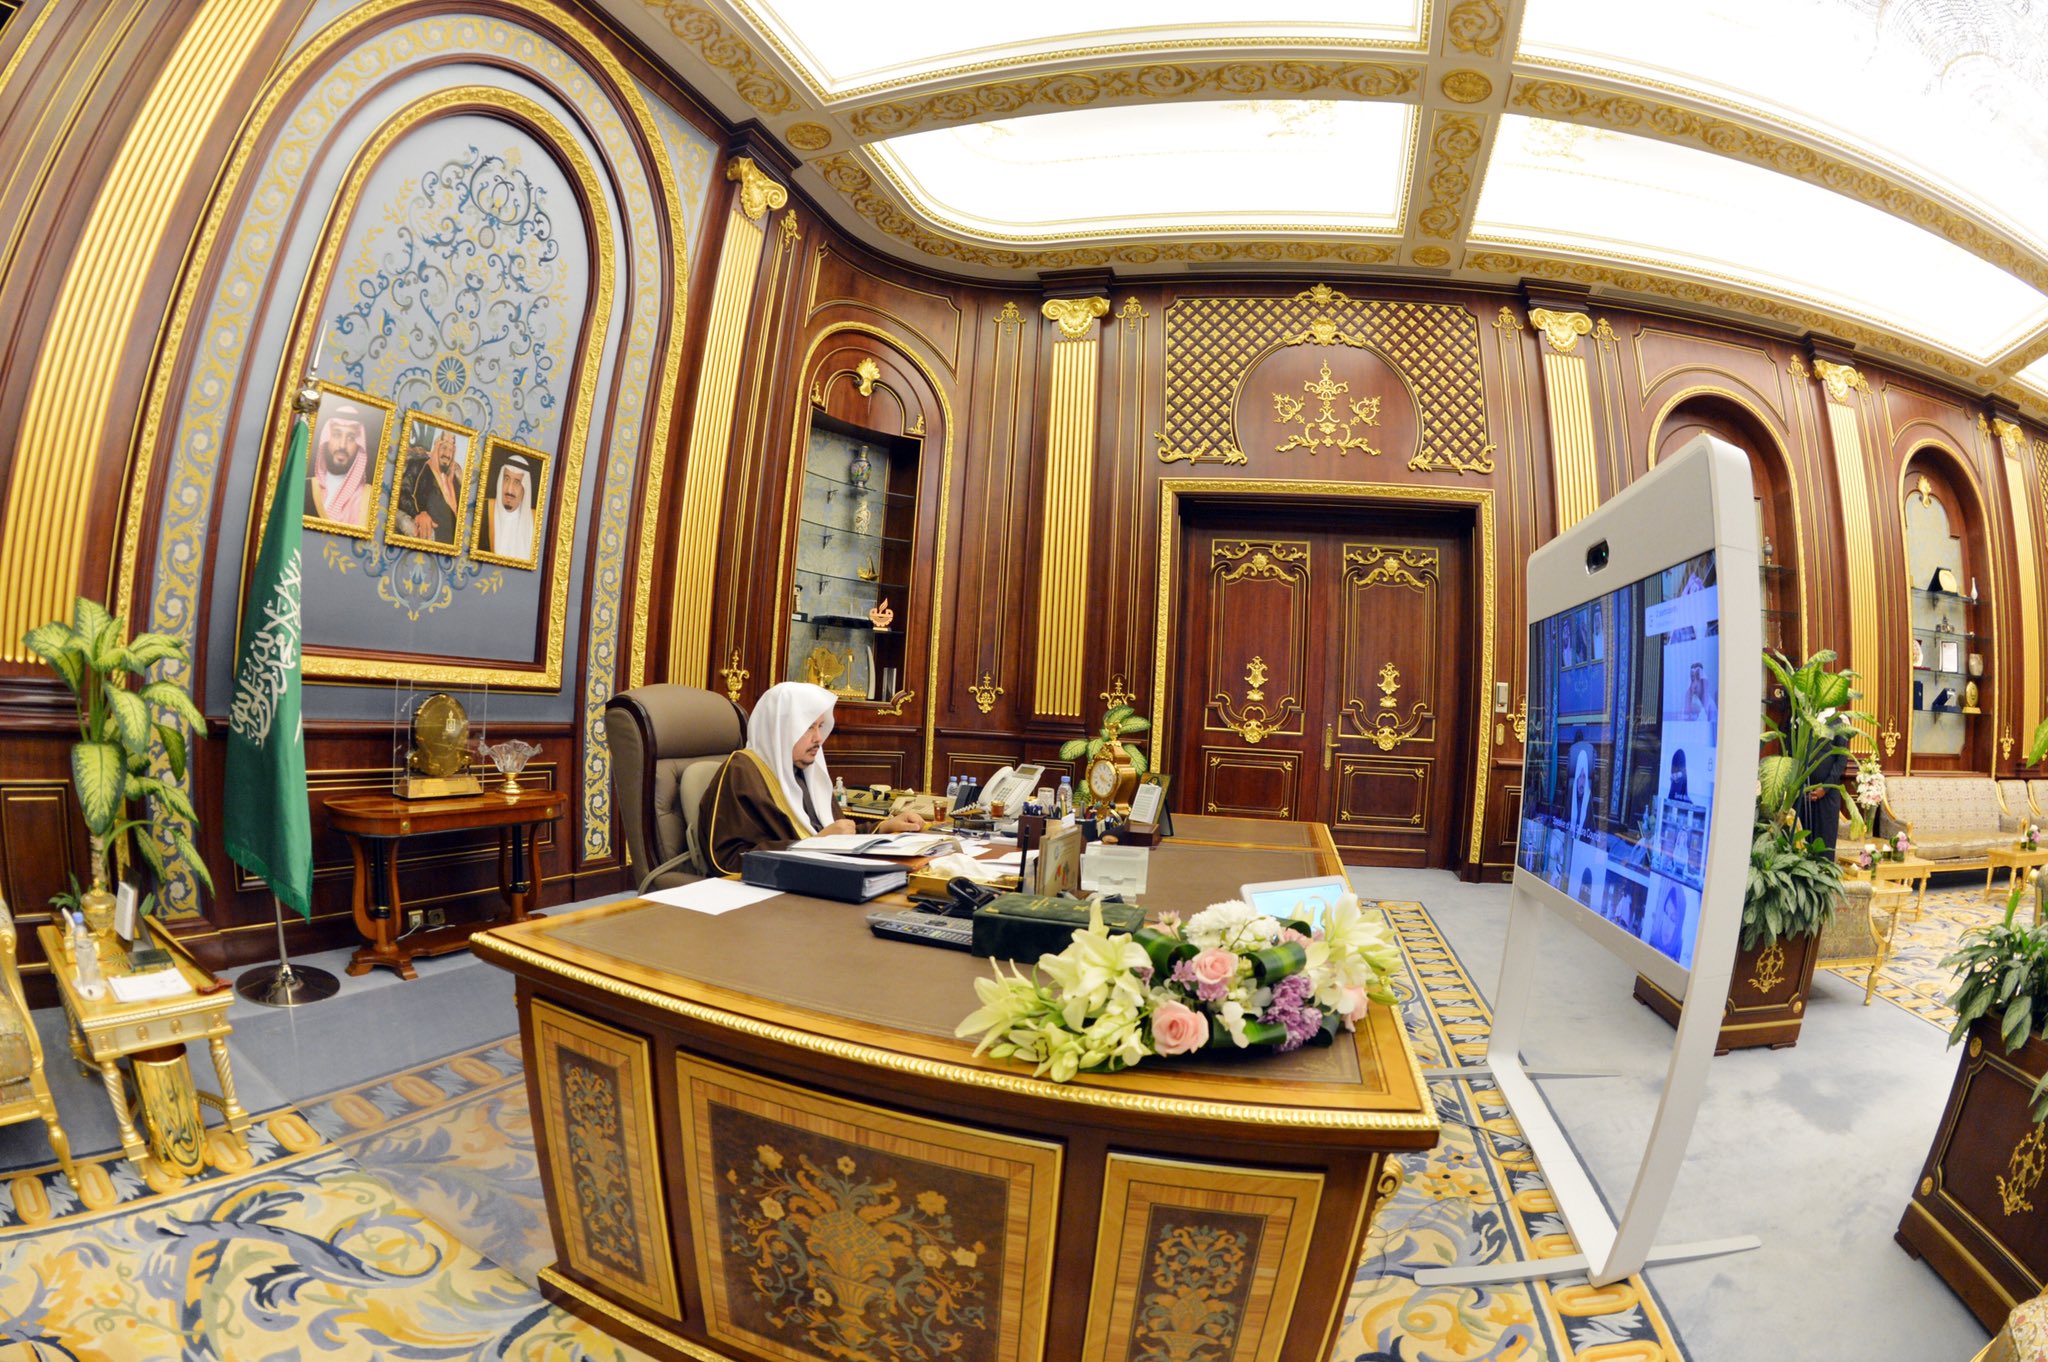 مجلس الشورى يناقش تعديل نظام المحاماة وتقارير اللجان